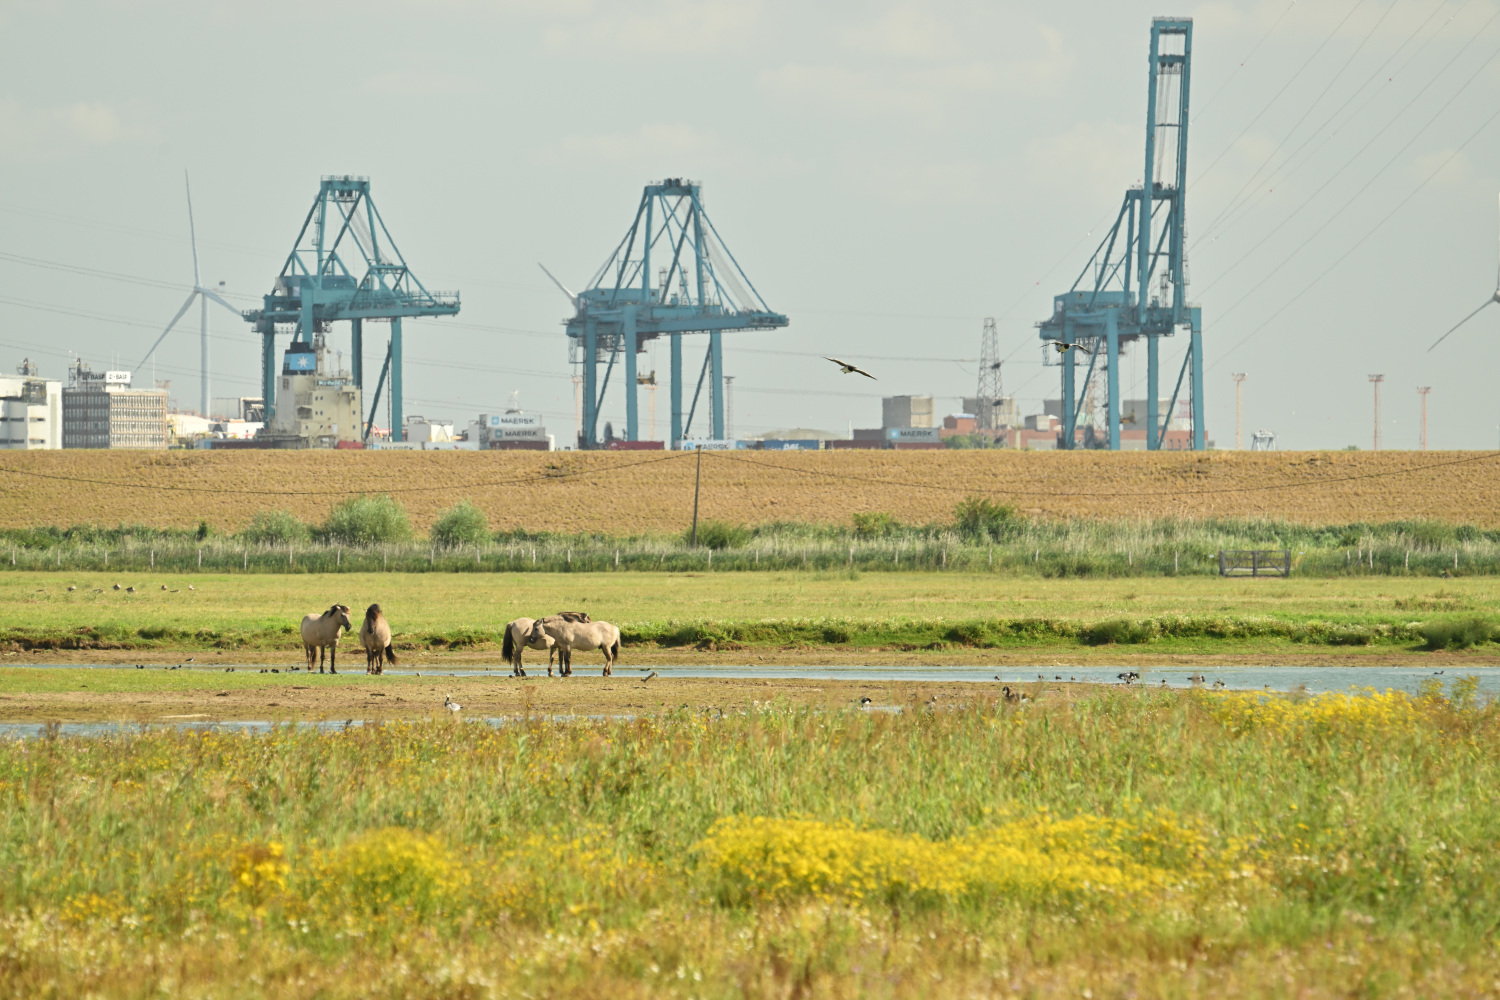 Konikpaarden in Doelpolder met havenkranen op de achtergrond